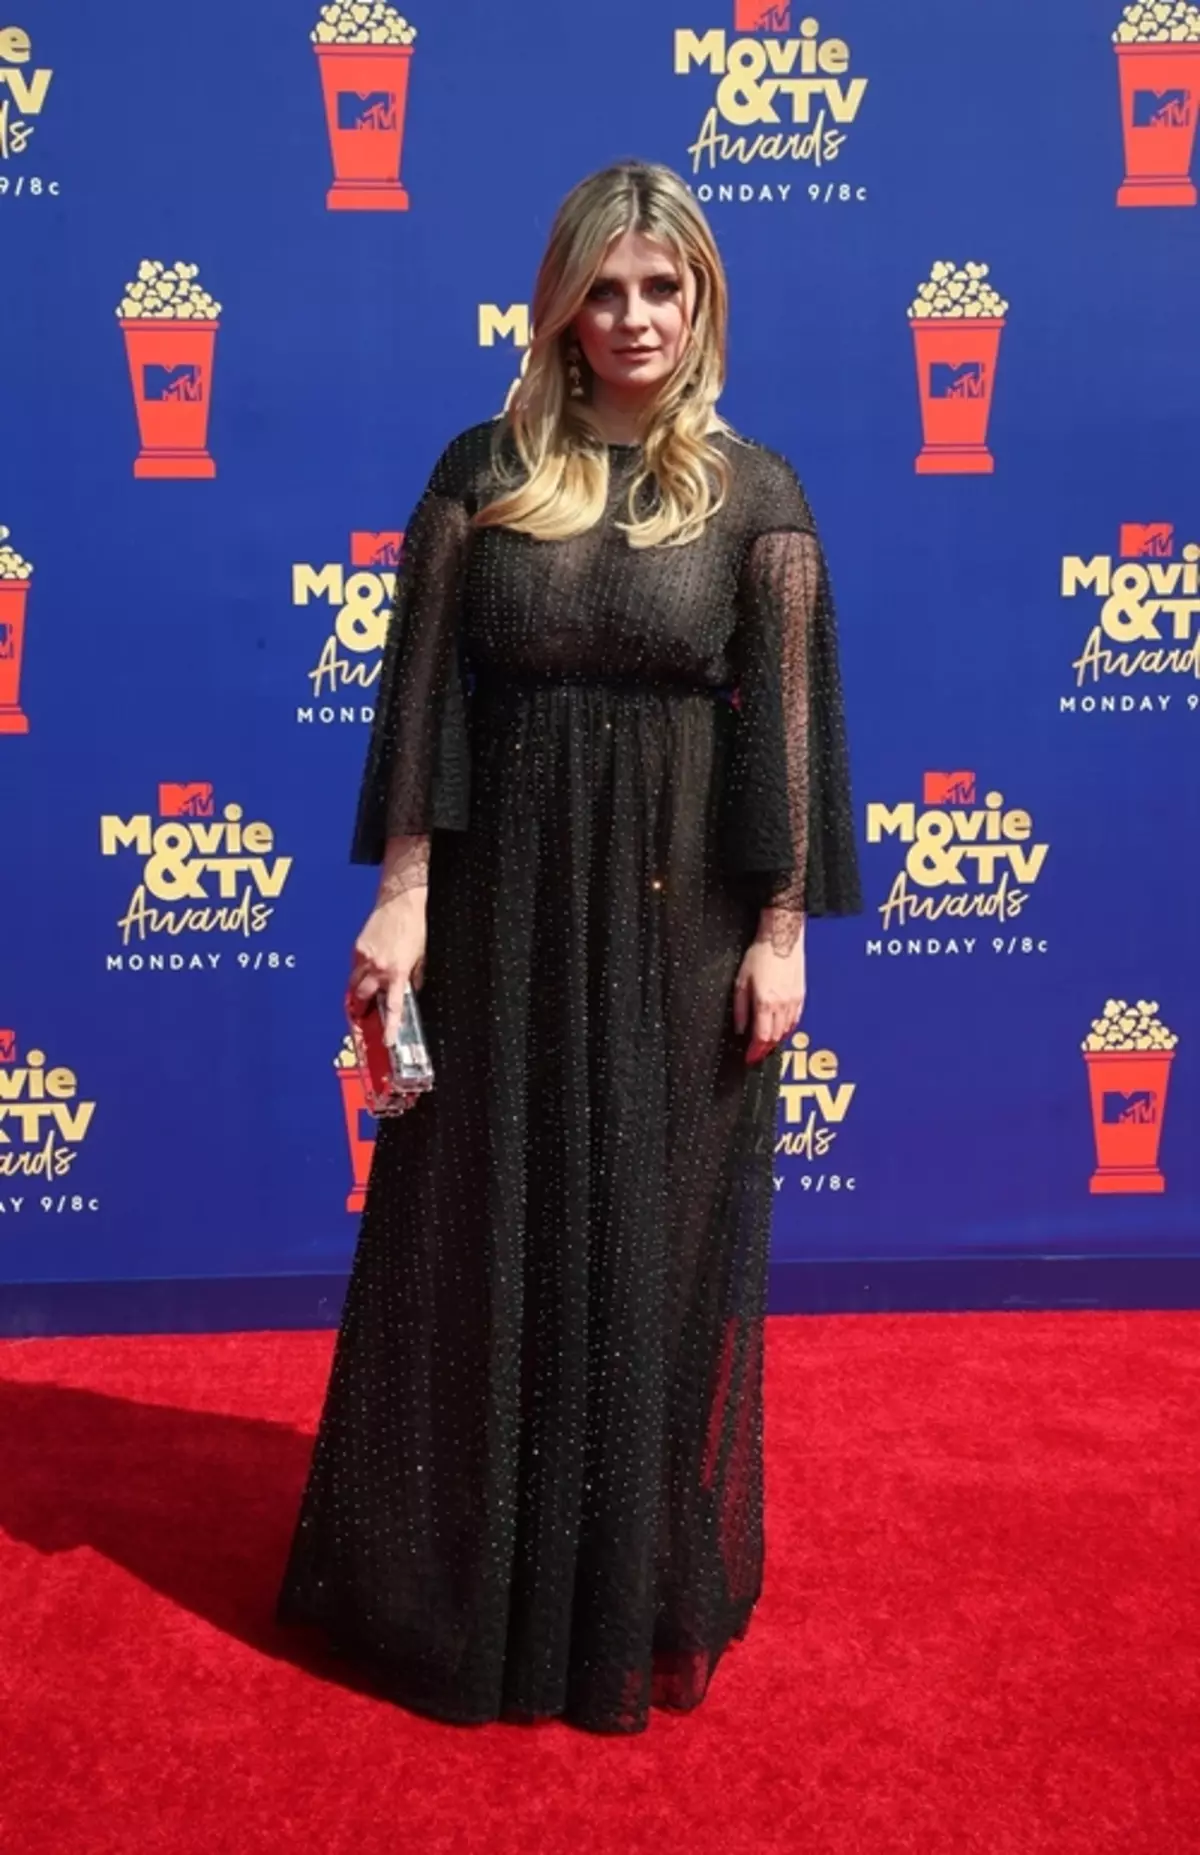 MTV Movie & TV auhinnad 2019: Foto tähed punase vaiba ja võitjate nimekirja 56152_6